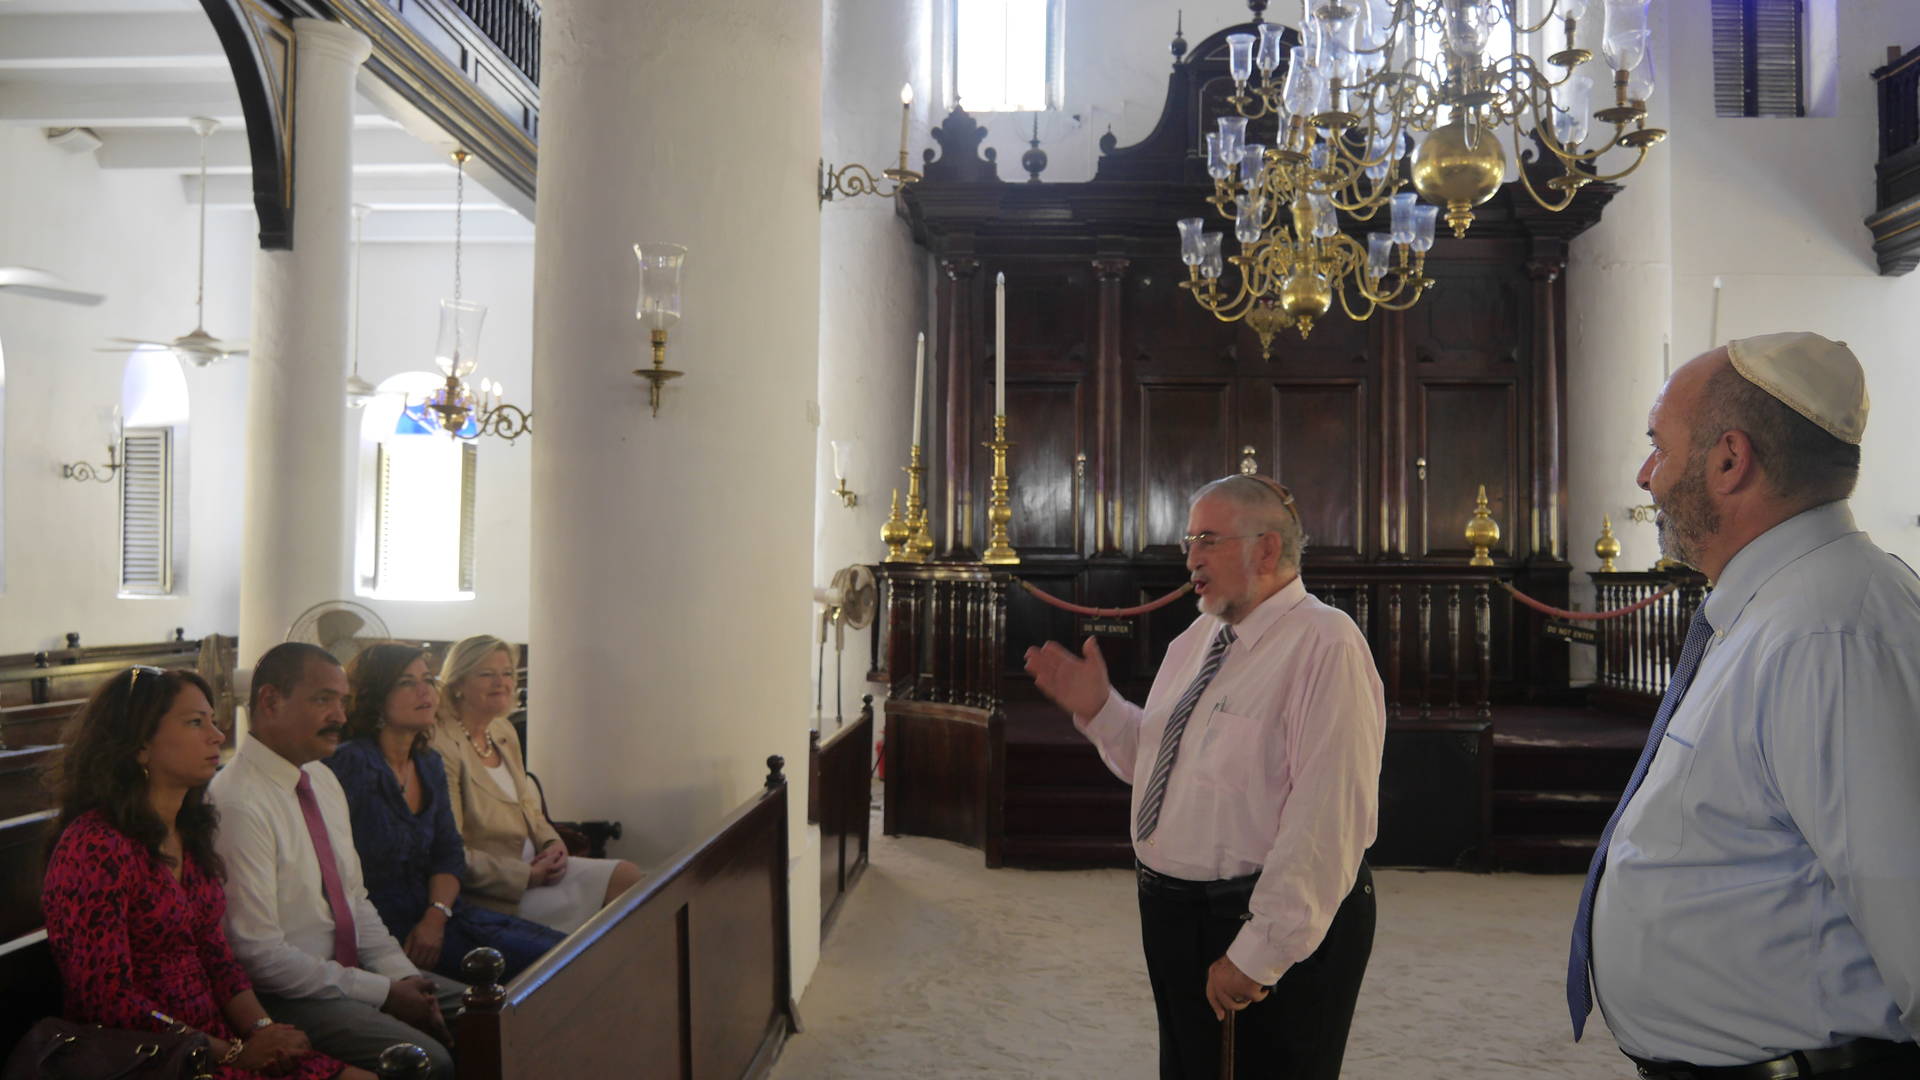 Bezoek aan de synagoge in Willemstad